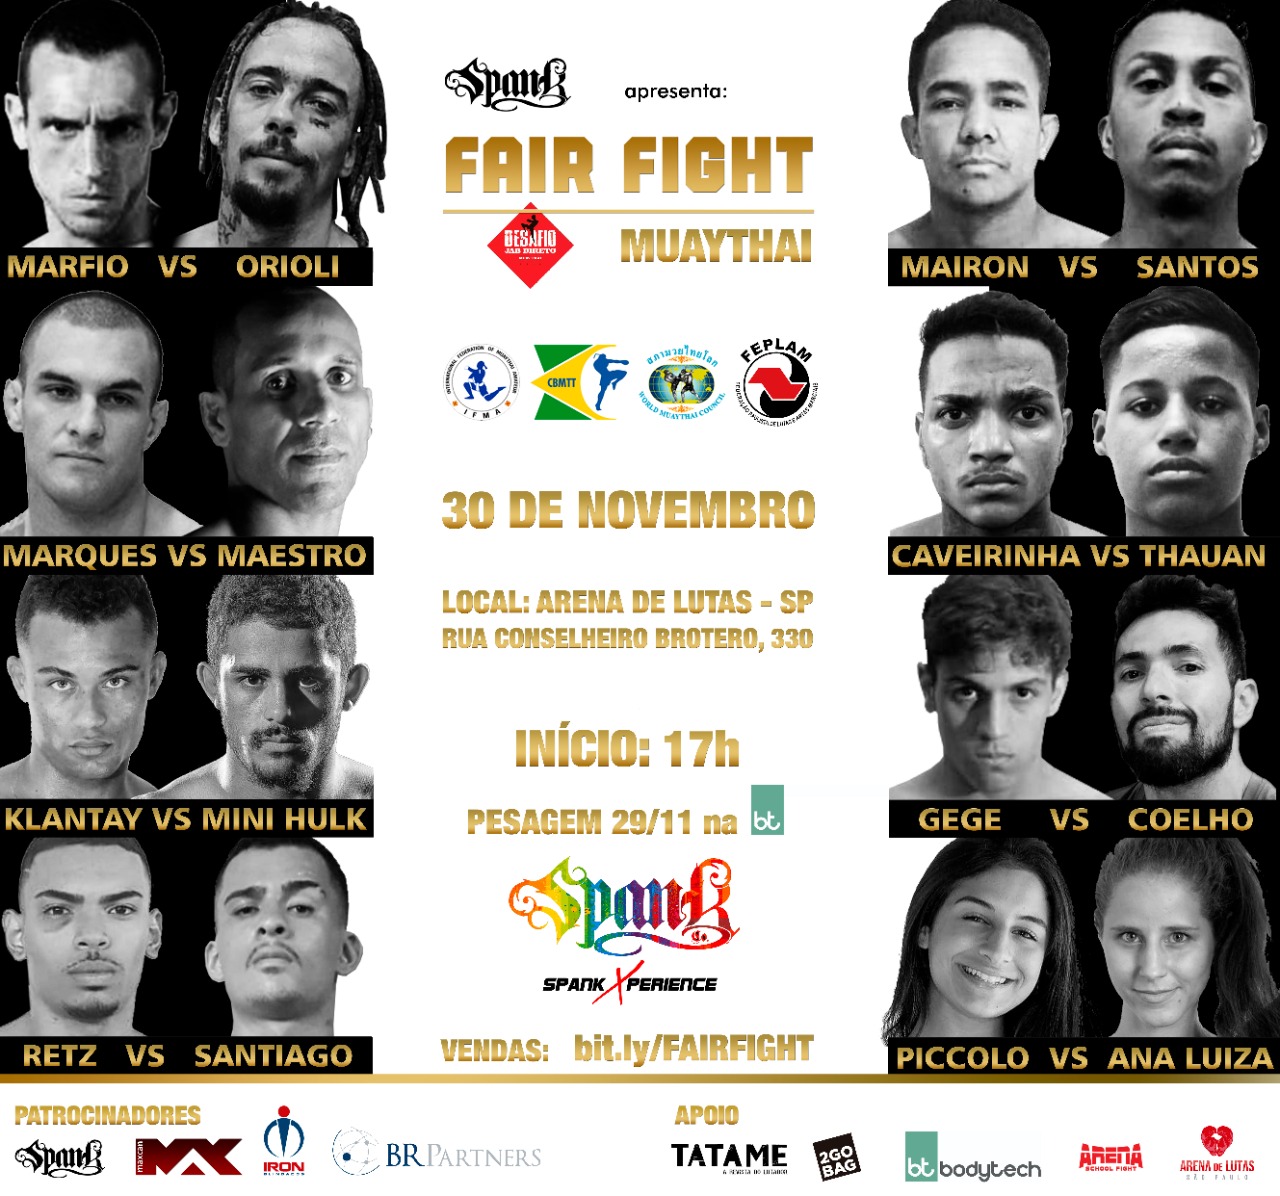 Com representantes da velha e nova geração do Muay Thai, Fair Fight realiza terceira edição no fim deste mês